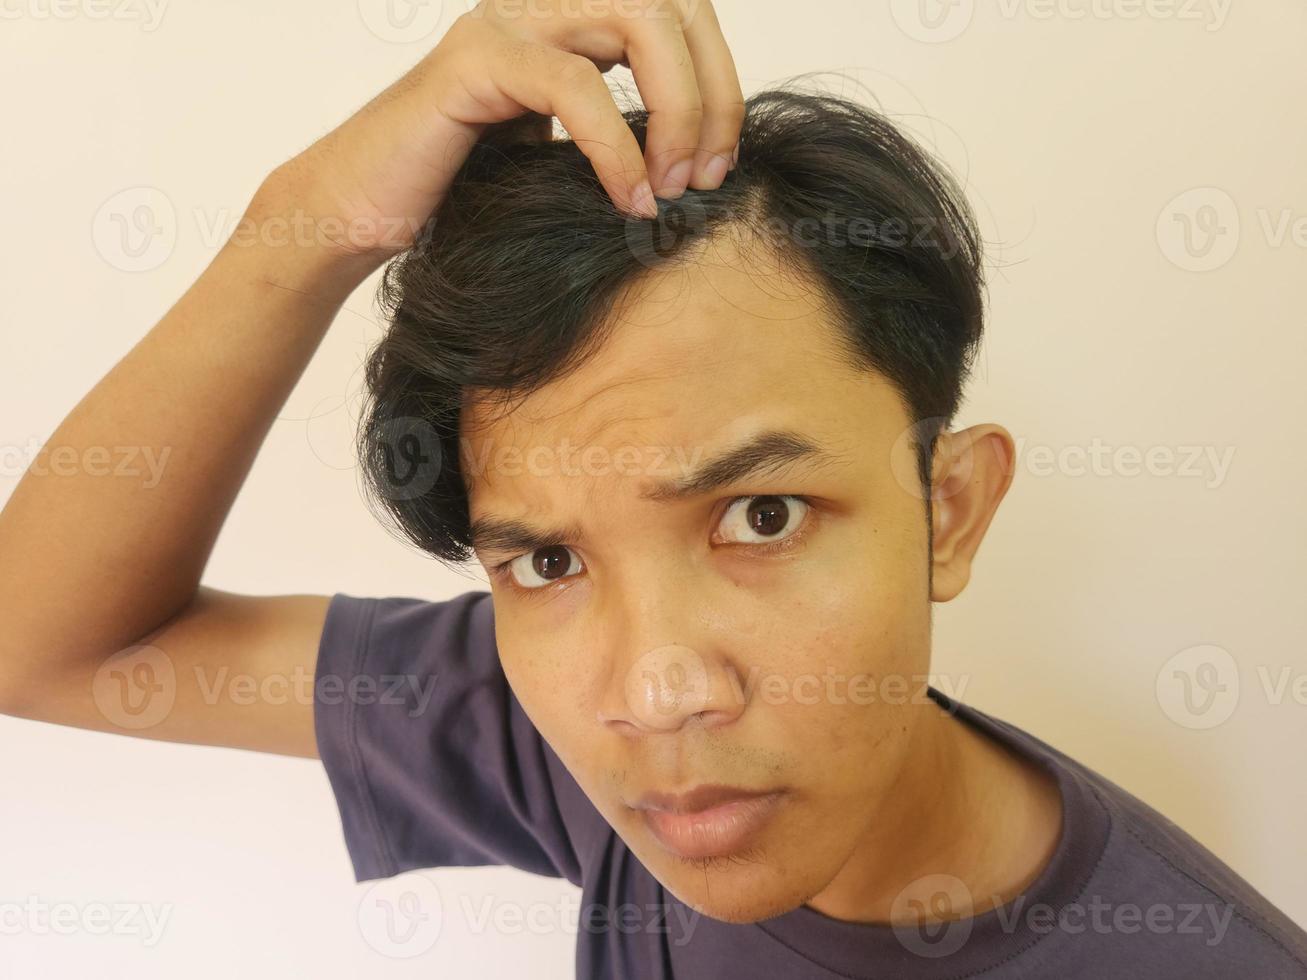 chockade ansikte av asiatisk man få skallig och förlorat hår i isolerat vit bakgrund foto